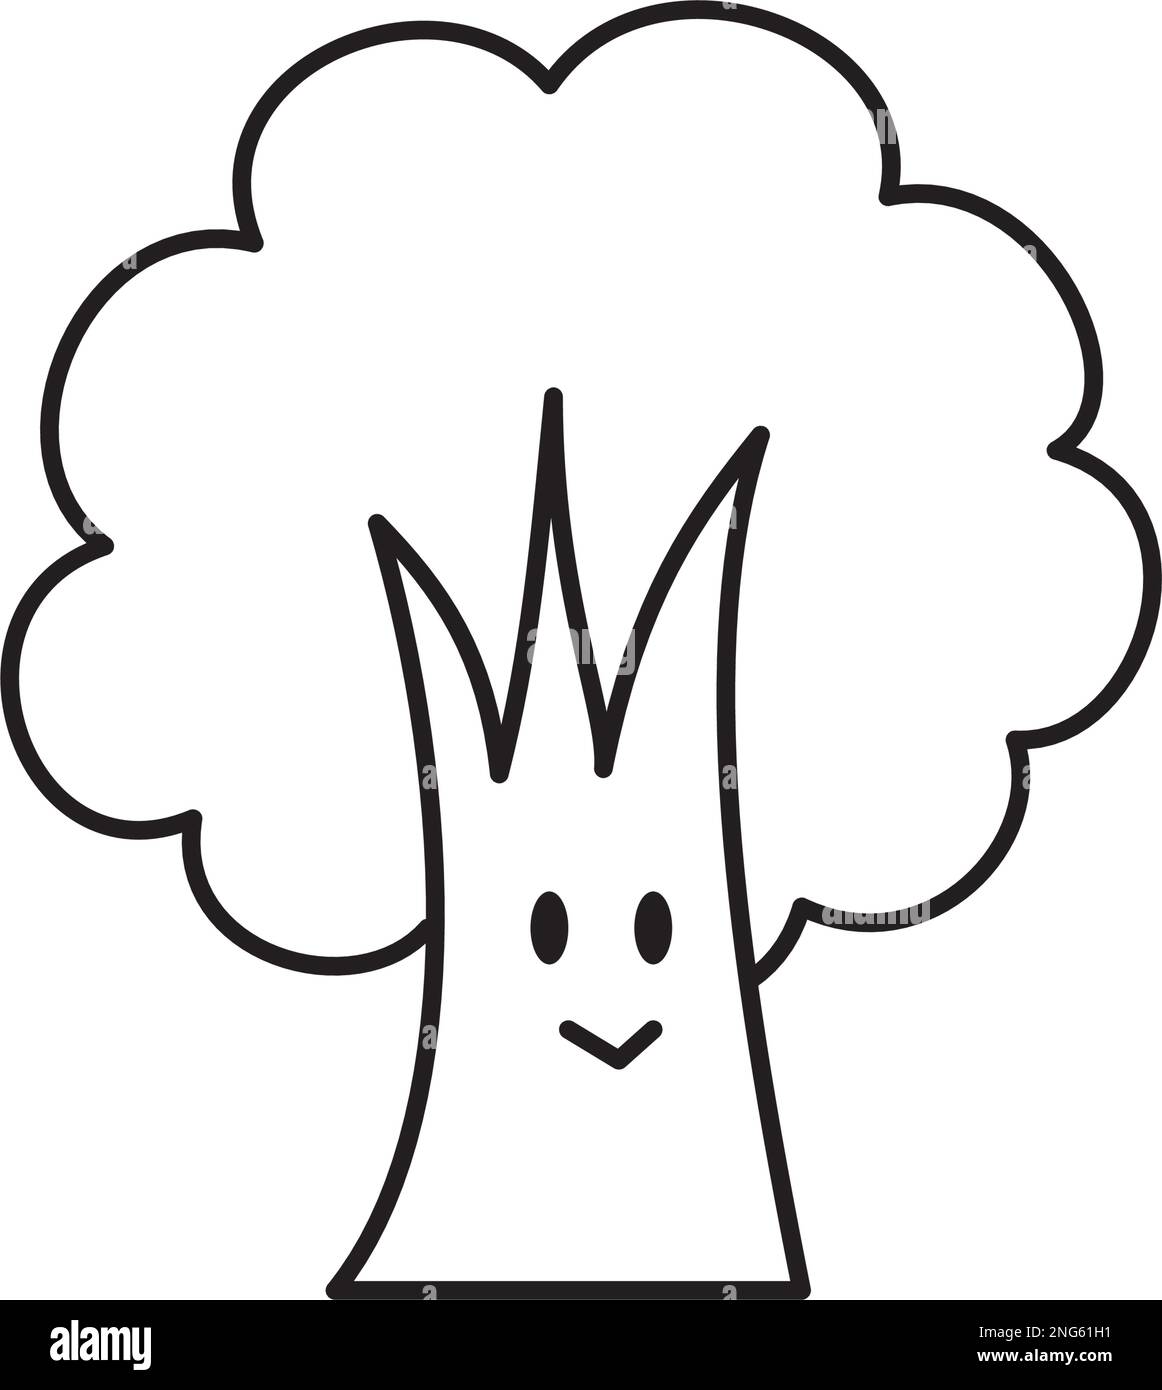 Eine einfache hölzerne Figur, die lächelt. Schwarz-weiße Linienzeichnung. Eine süße Illustration eines deformierten Baumes. Stock Vektor